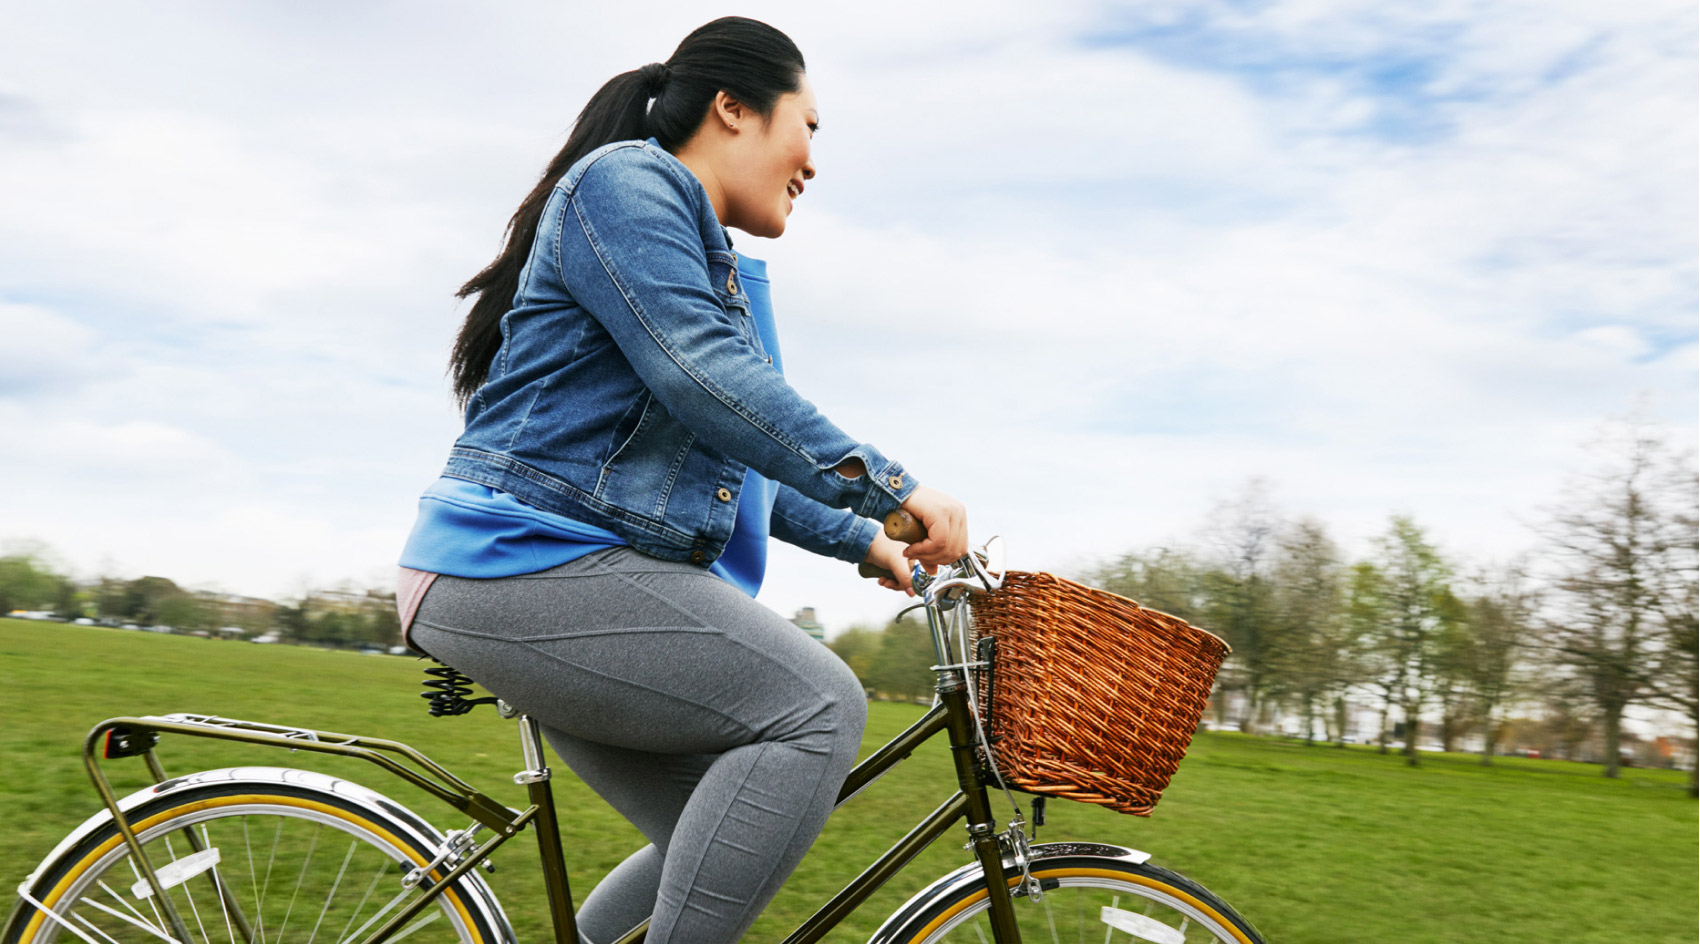  Bir kadın kilo vermek için bir egzersiz aracı olarak bir bisiklet kullanır.